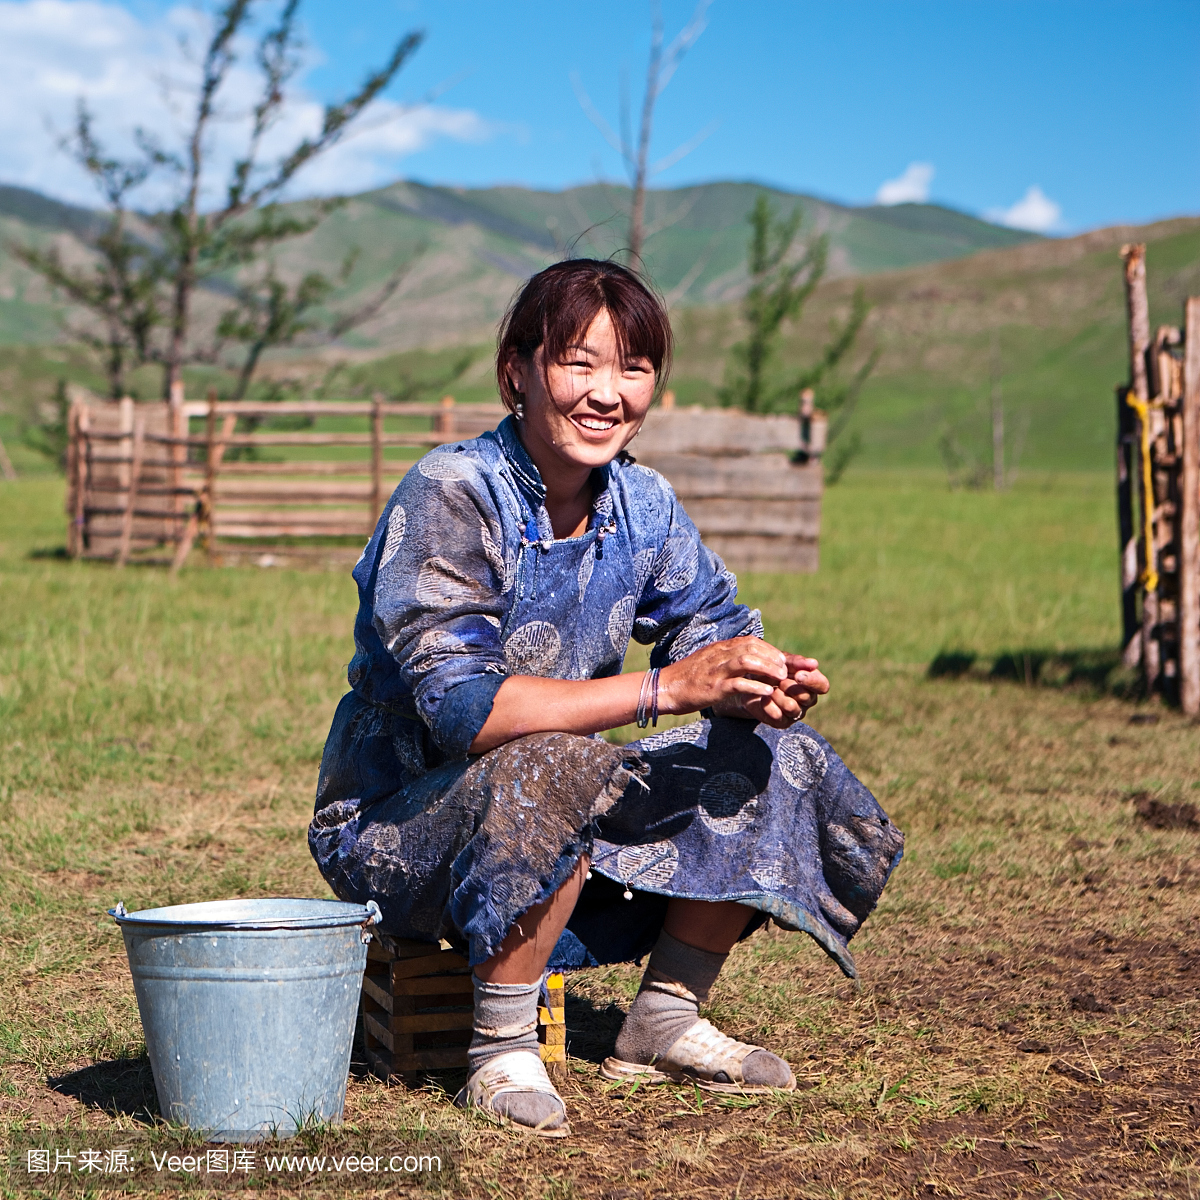 蒙古妇女在全国服装挤奶牦牛